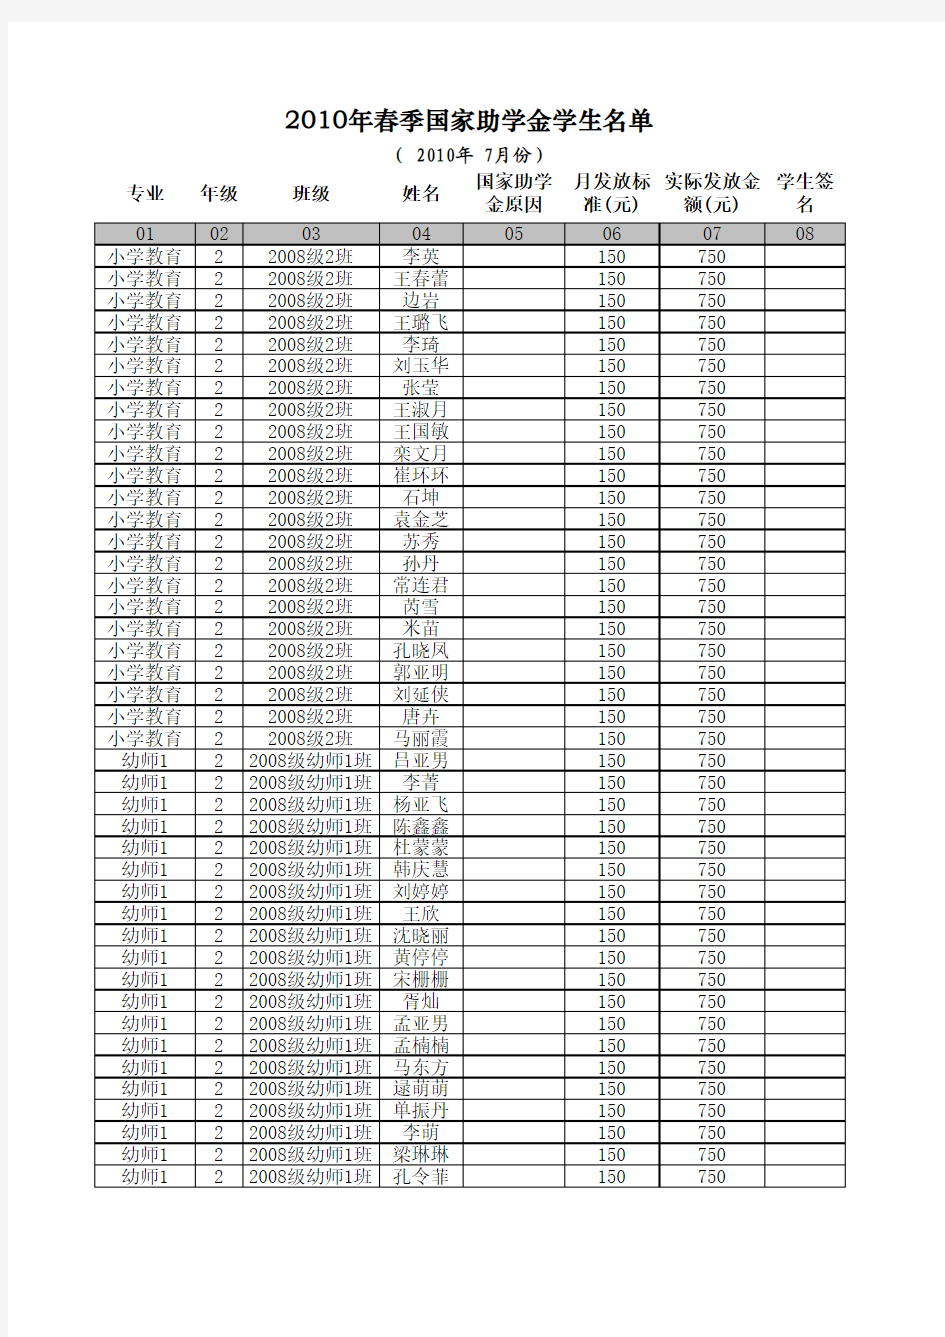 2010年春季实际国家助学金学生公示名单